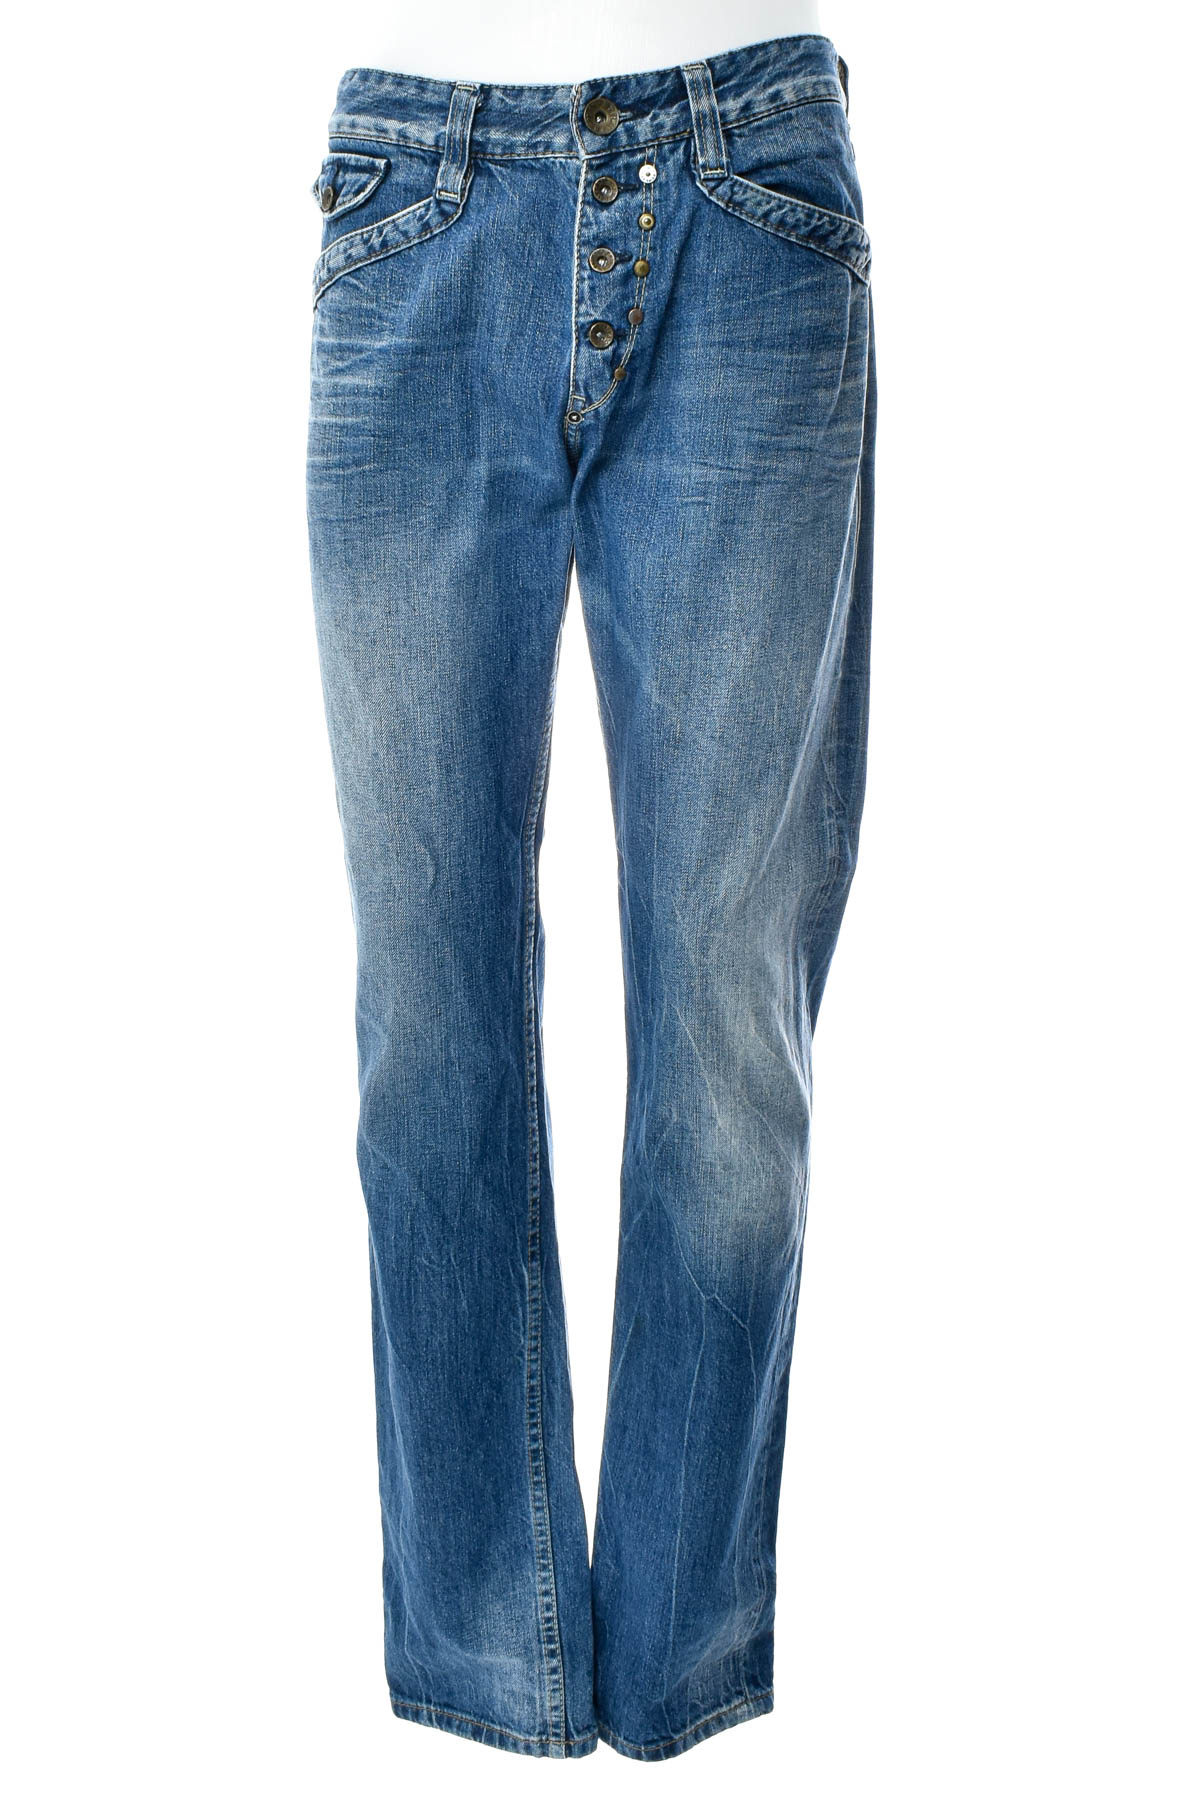 Men's jeans - REPLAY - 0